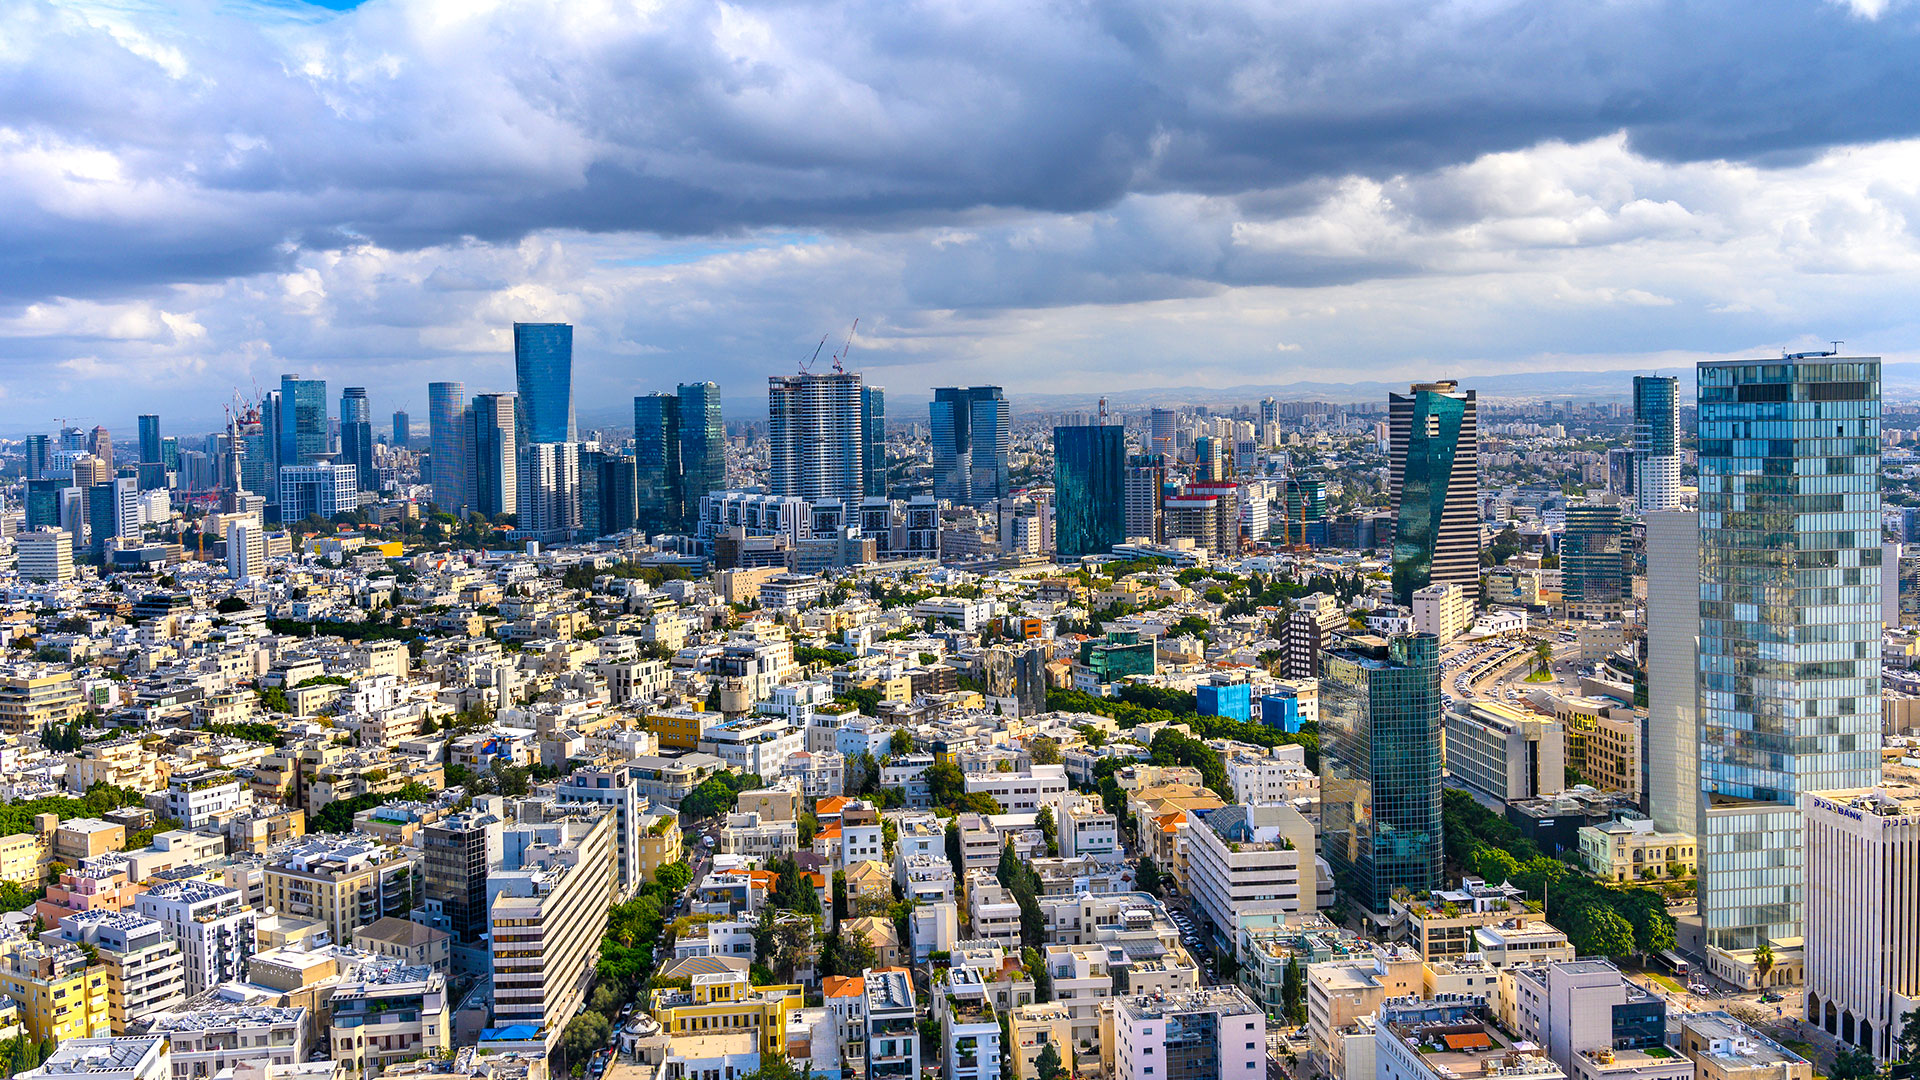 Israel Tel Aviv skyline skyscrapers view